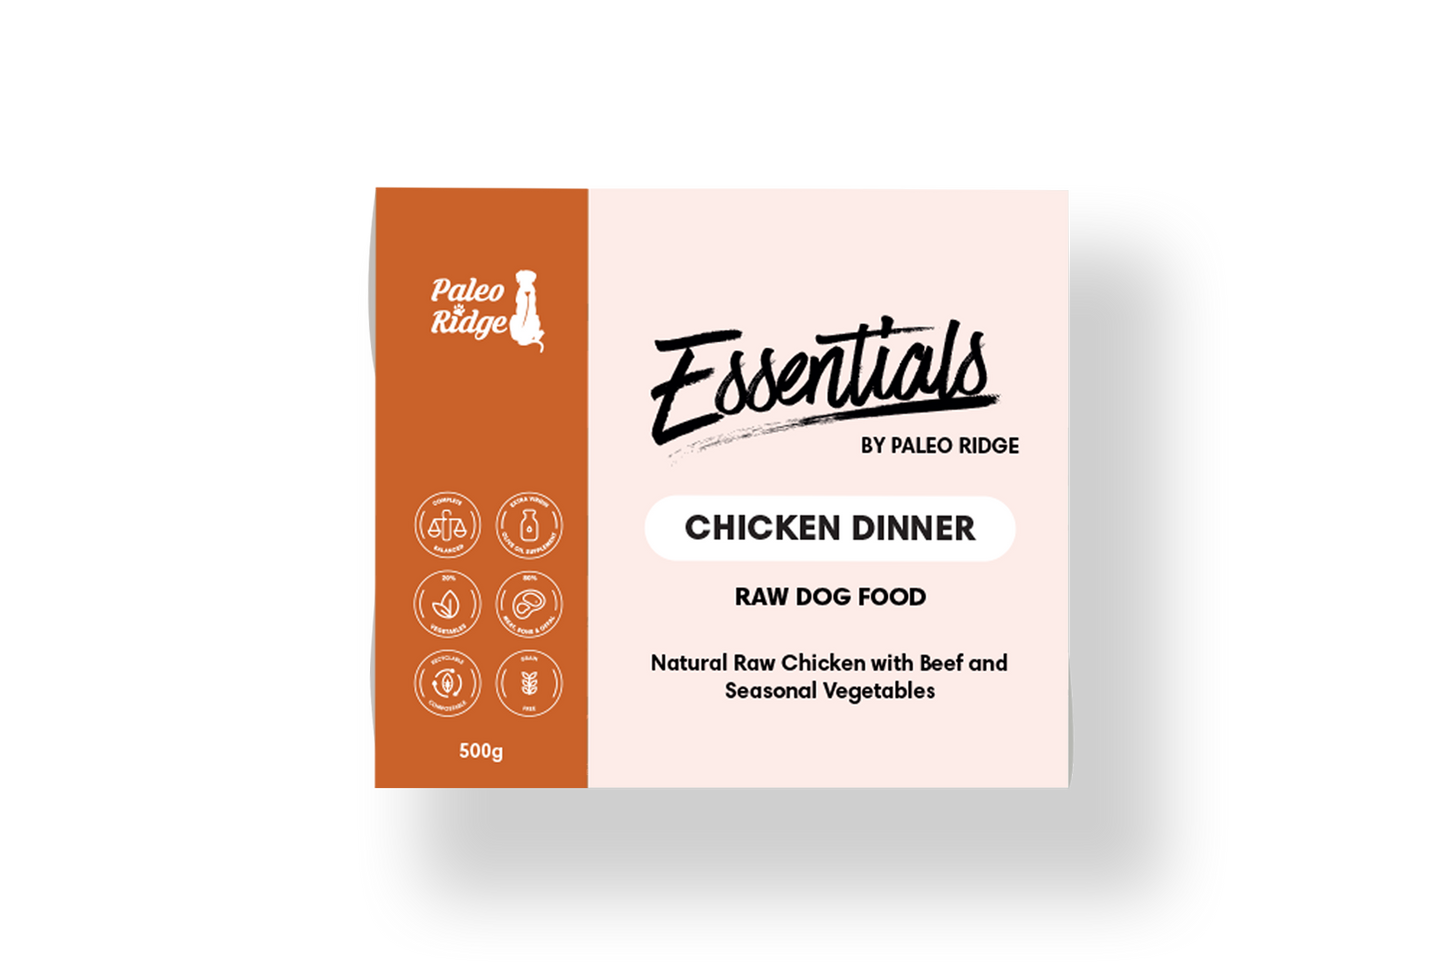 Paleo Ridge Essentials Chicken Dinner 500g